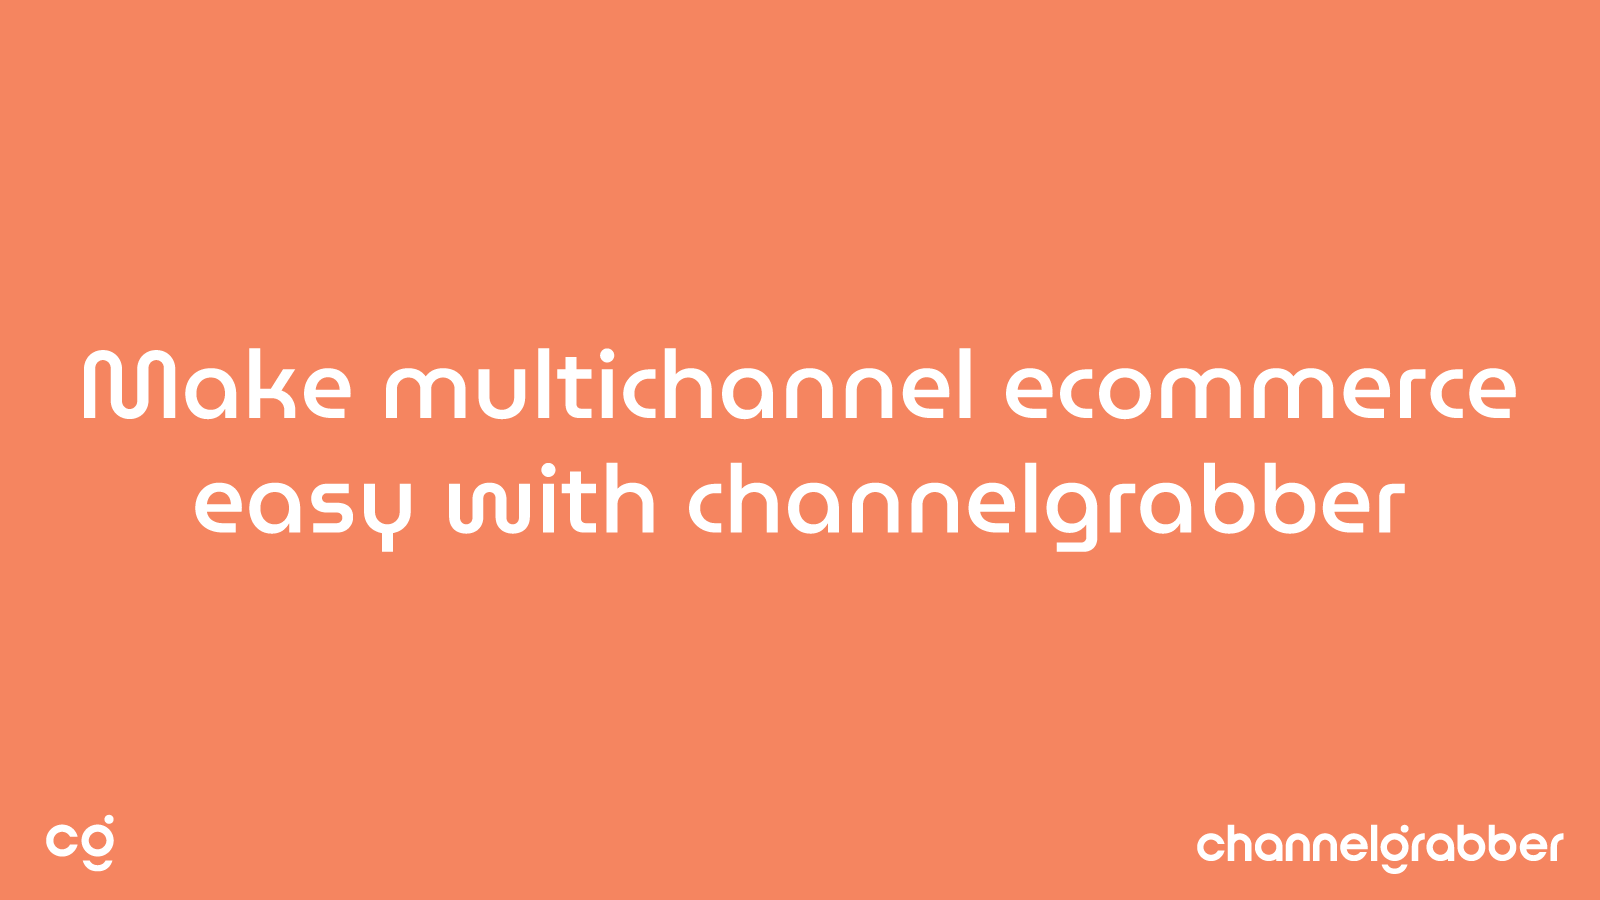 ChannelGrabber: Ecommerce Made Easy